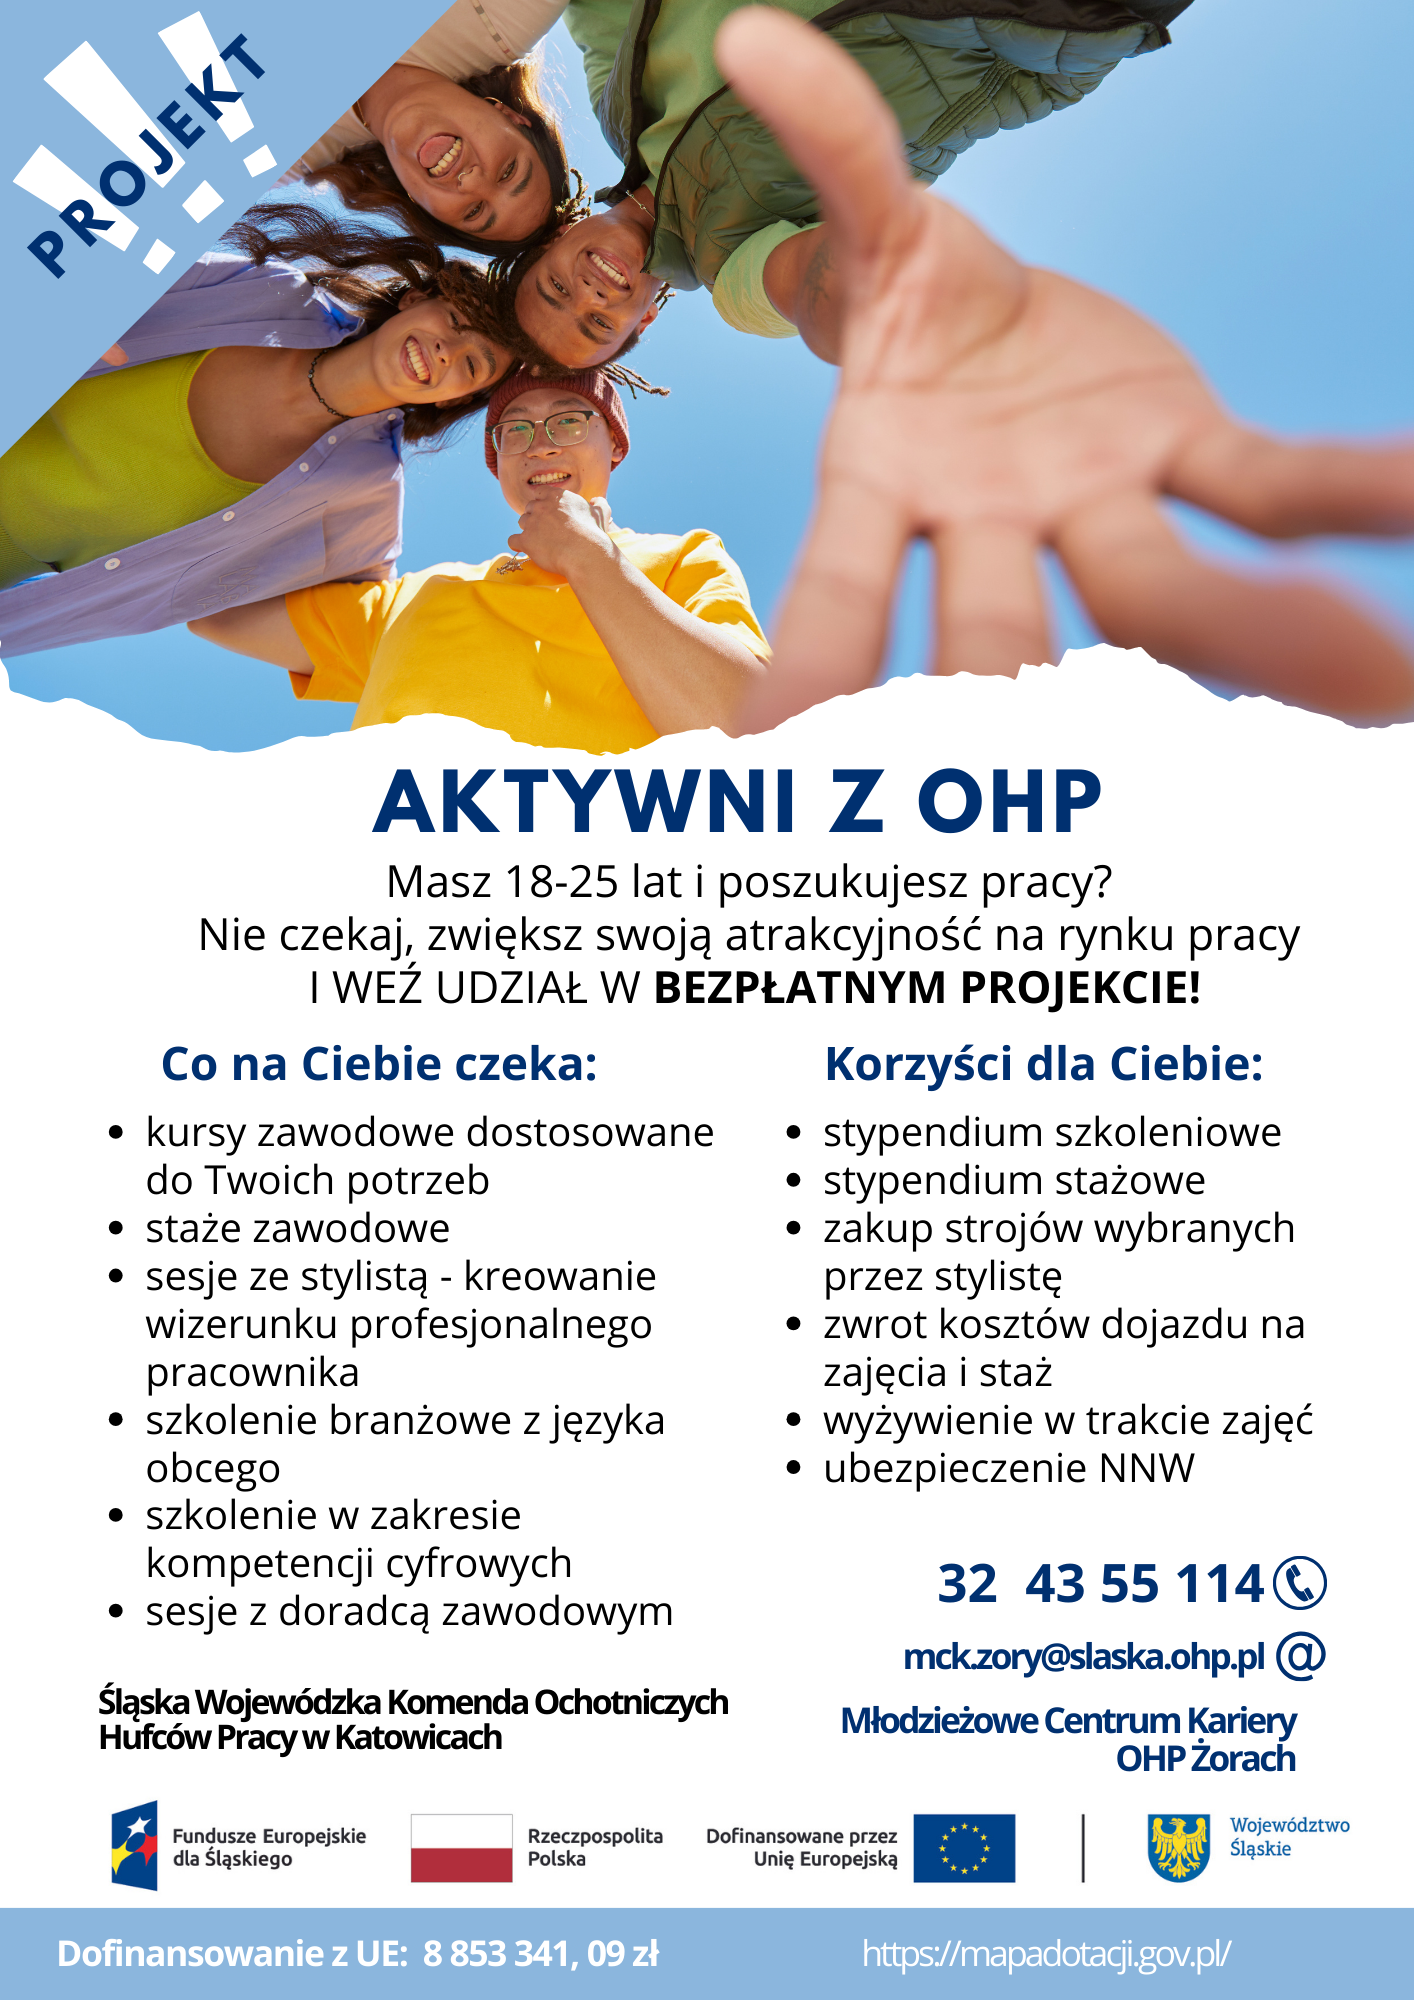 Plakat przedstawiający roześmianych ludzi i opis projektu Aktywni z OHP